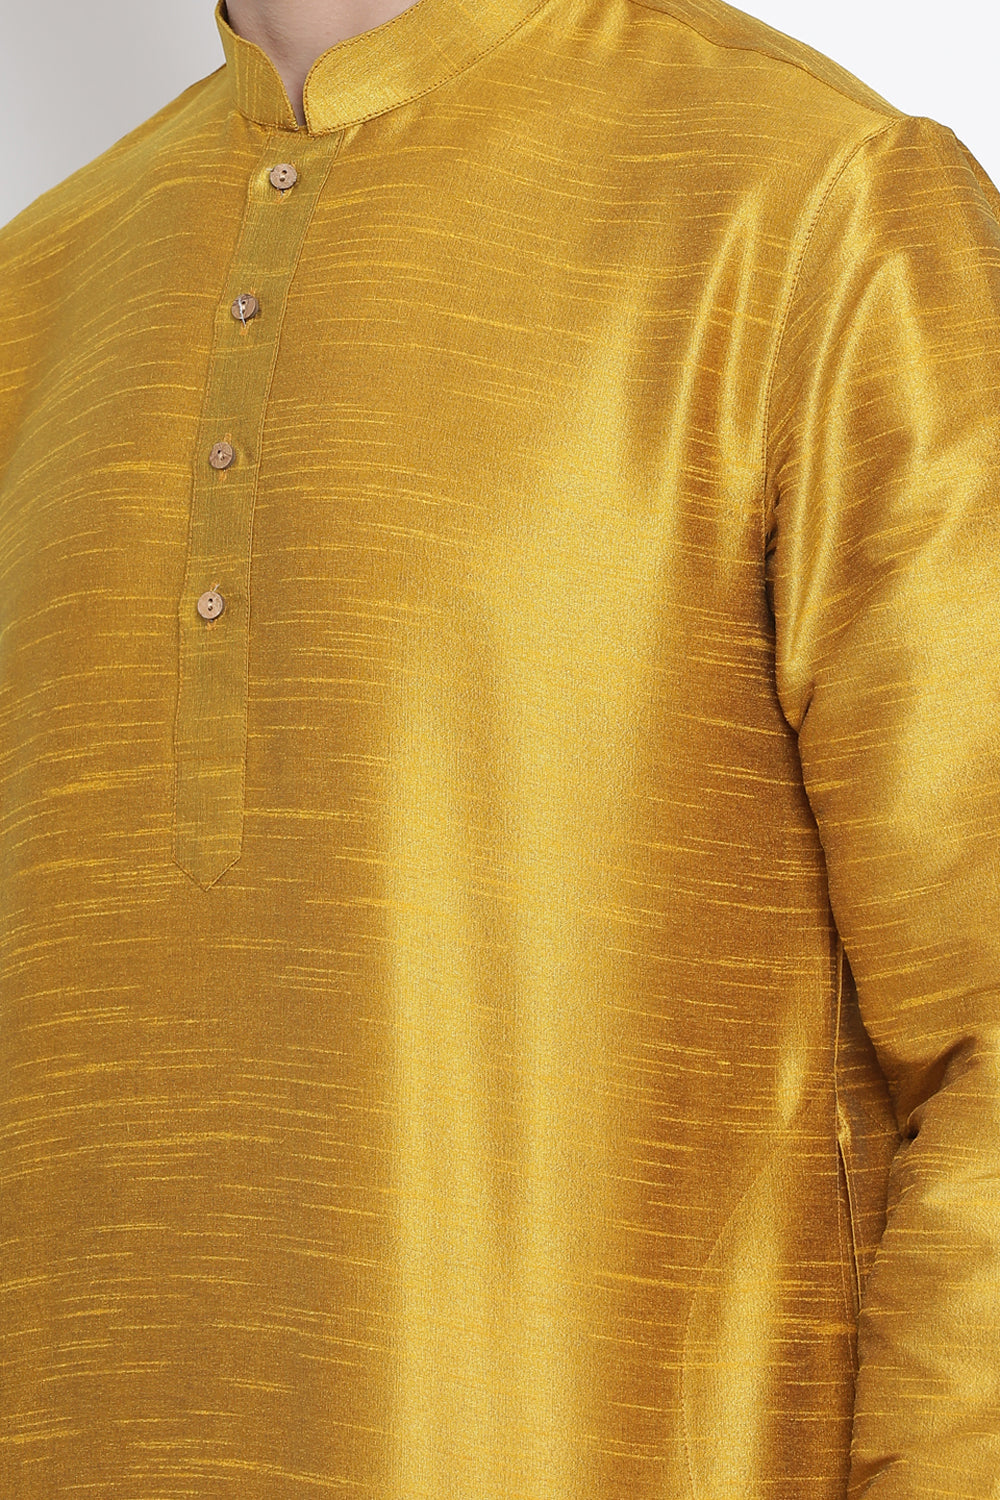 Men's Cotton Art Silk Kurta in Yellow